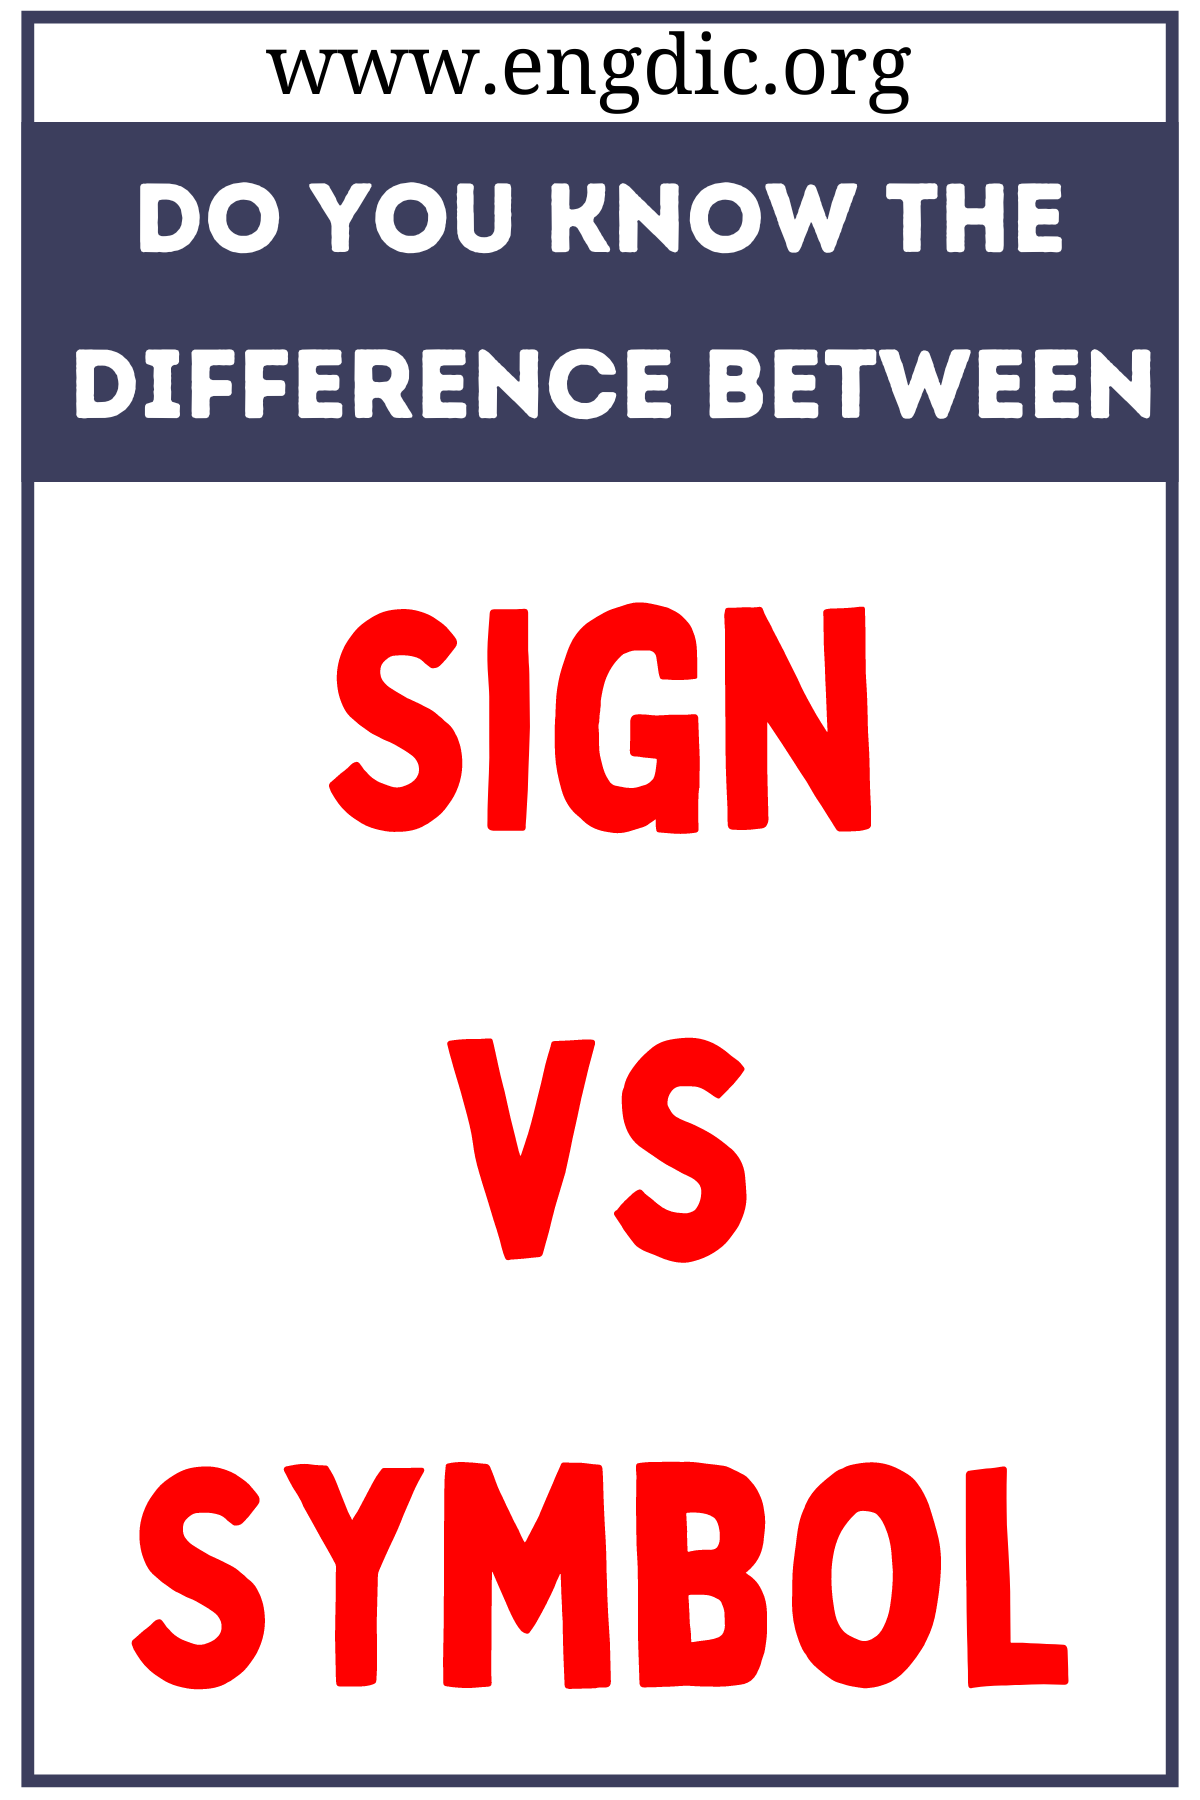 Sign vs Symbol